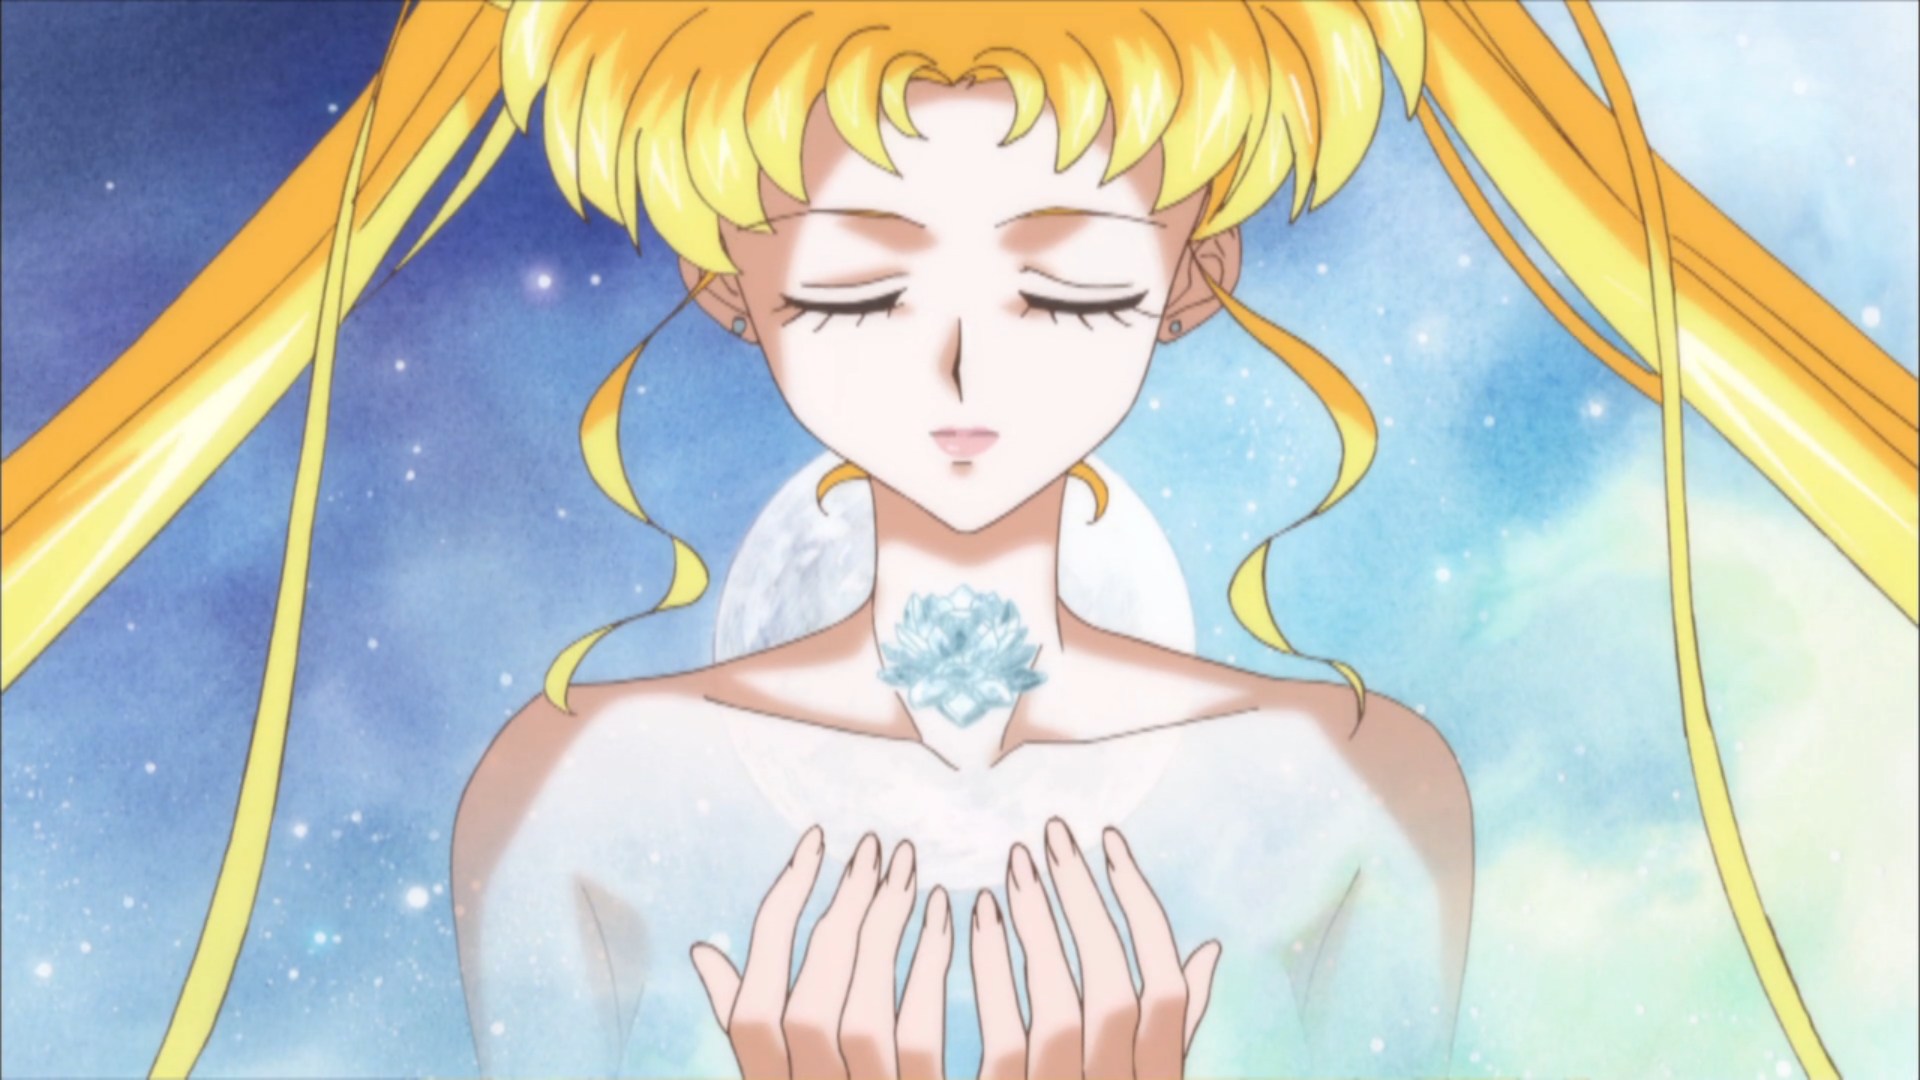 Anime Sailor Moon Crystal Wallpapers Wallpapersafari